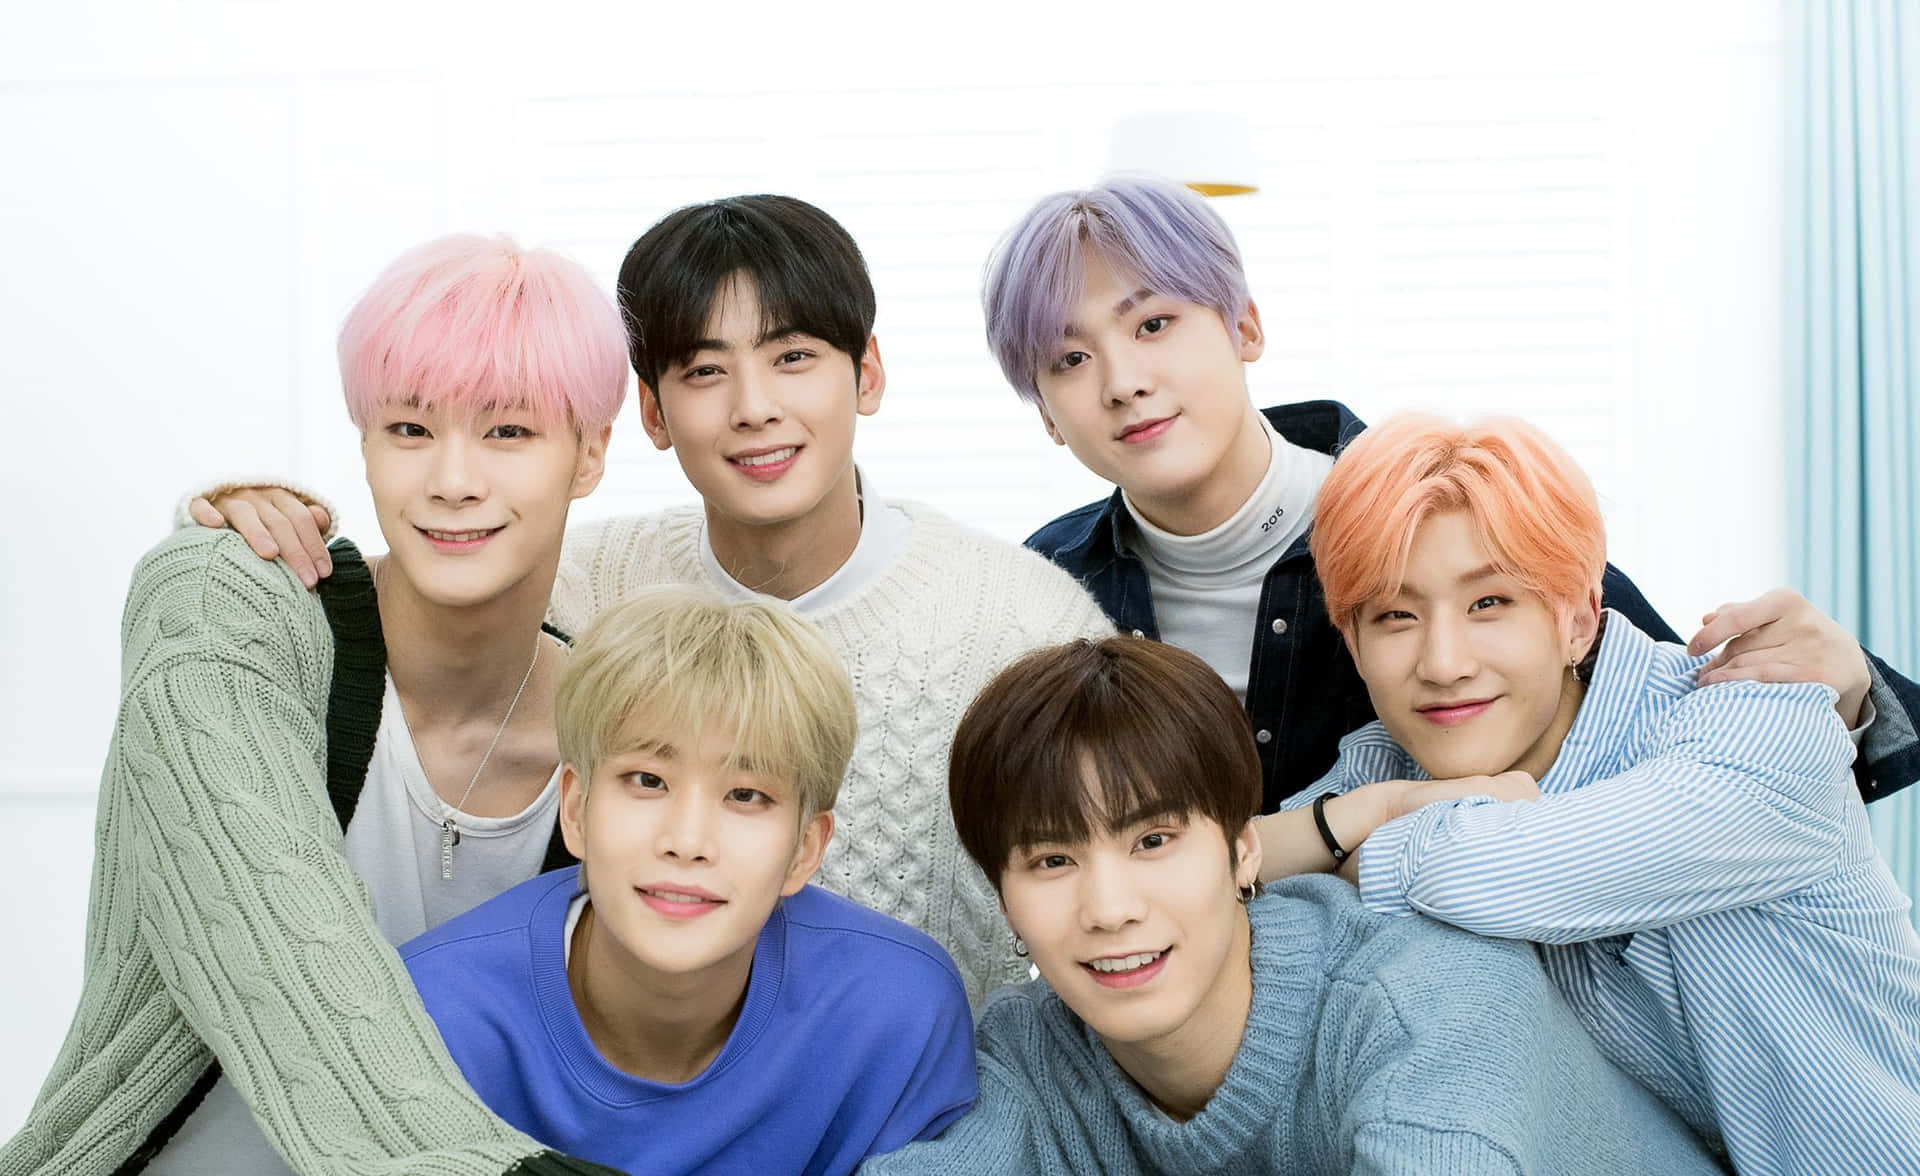 K Pop Group Smiling Together.jpg Wallpaper